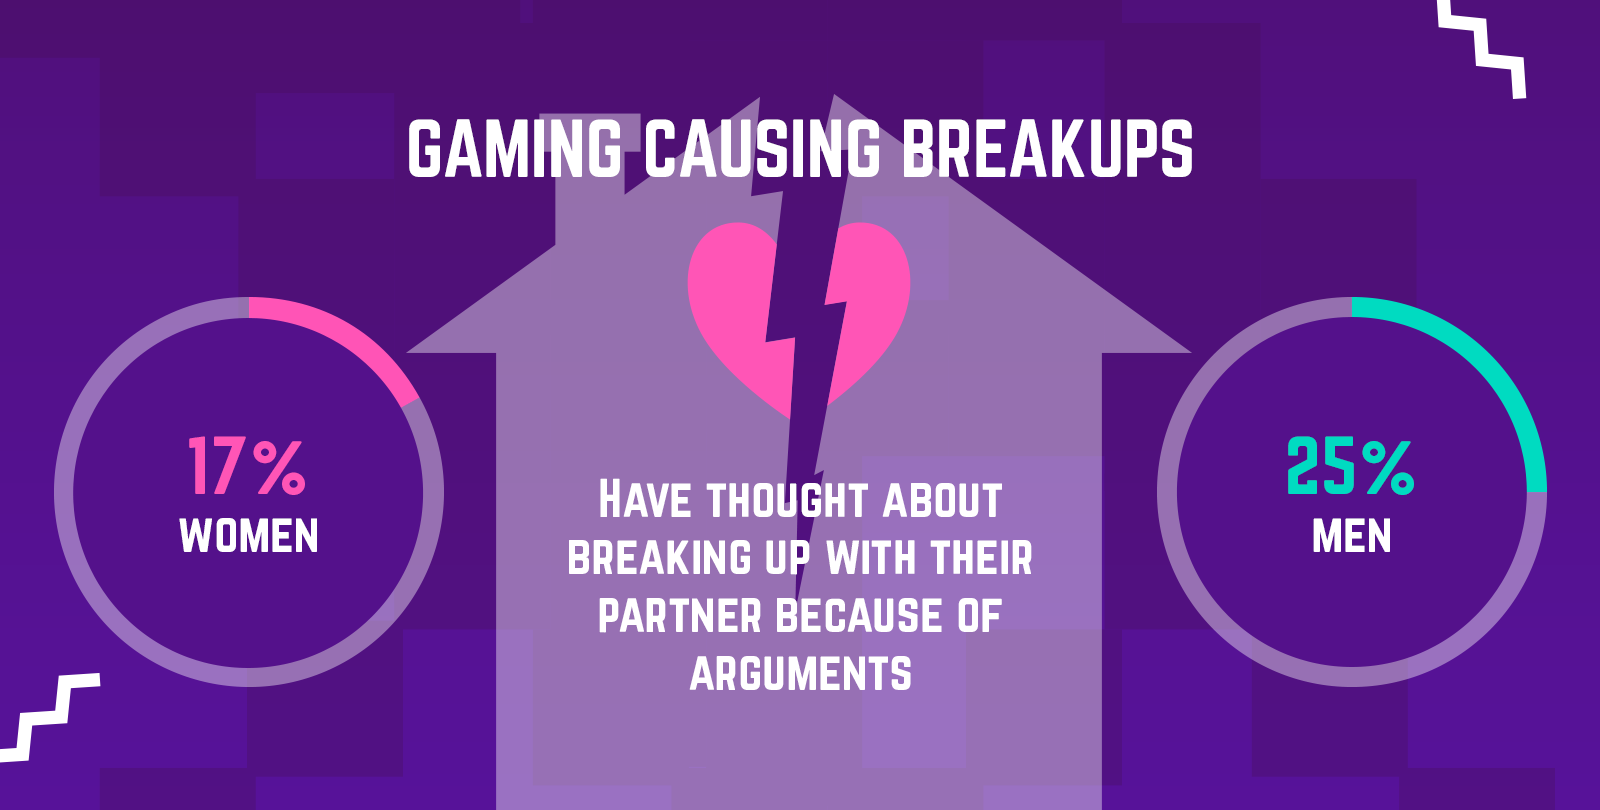 Gaming causing breakups